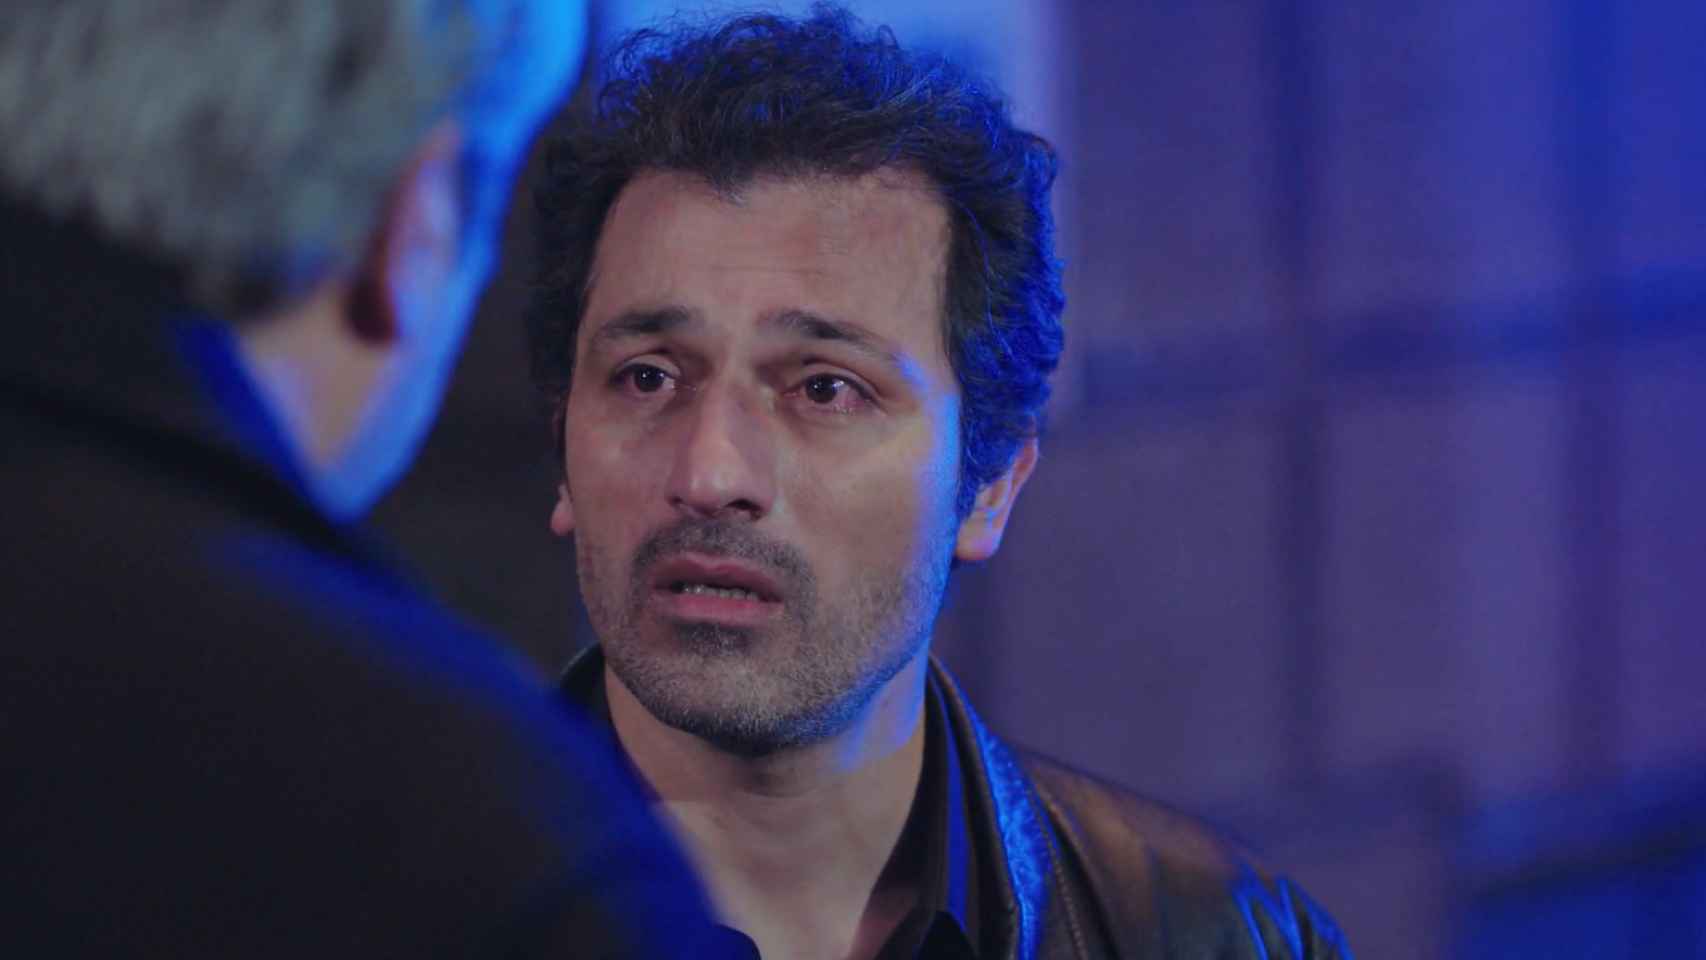 Arif le contará a Enver quién ha muerto en casa de Bahar.